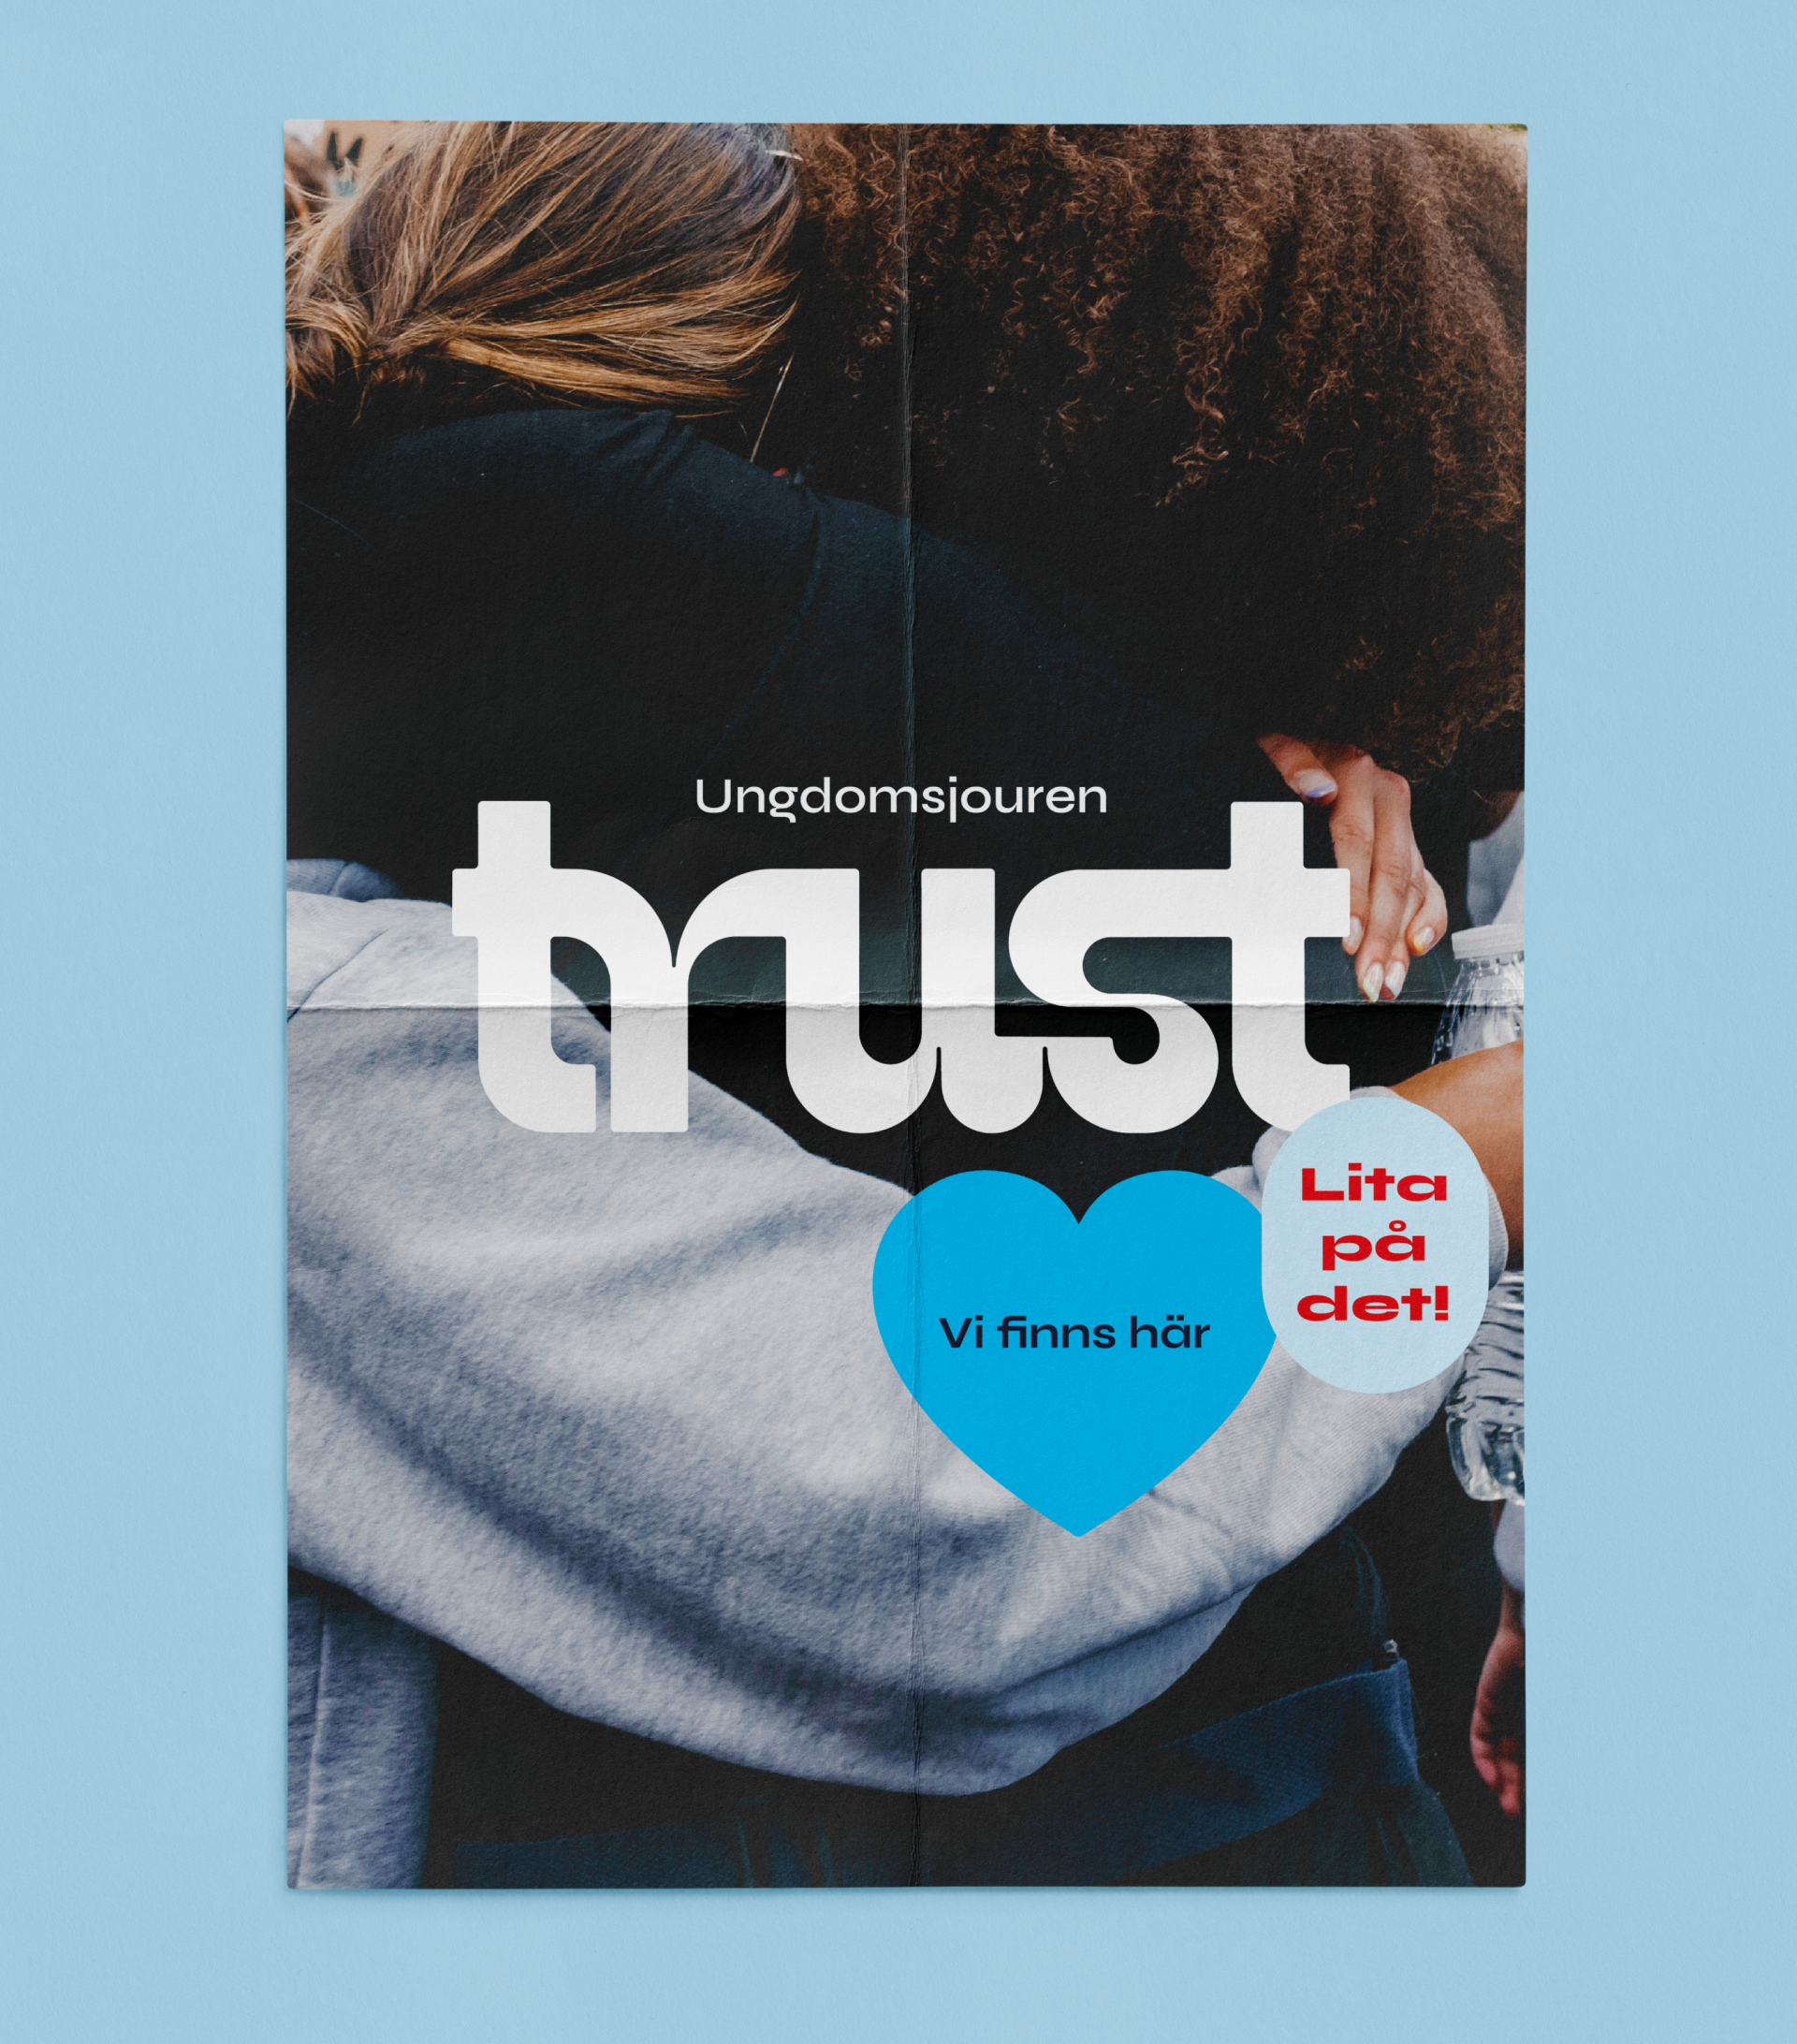 Bild på poster designad för ungdomsjouren trust. Texten i bilden säger Vi finns här, lita på det!